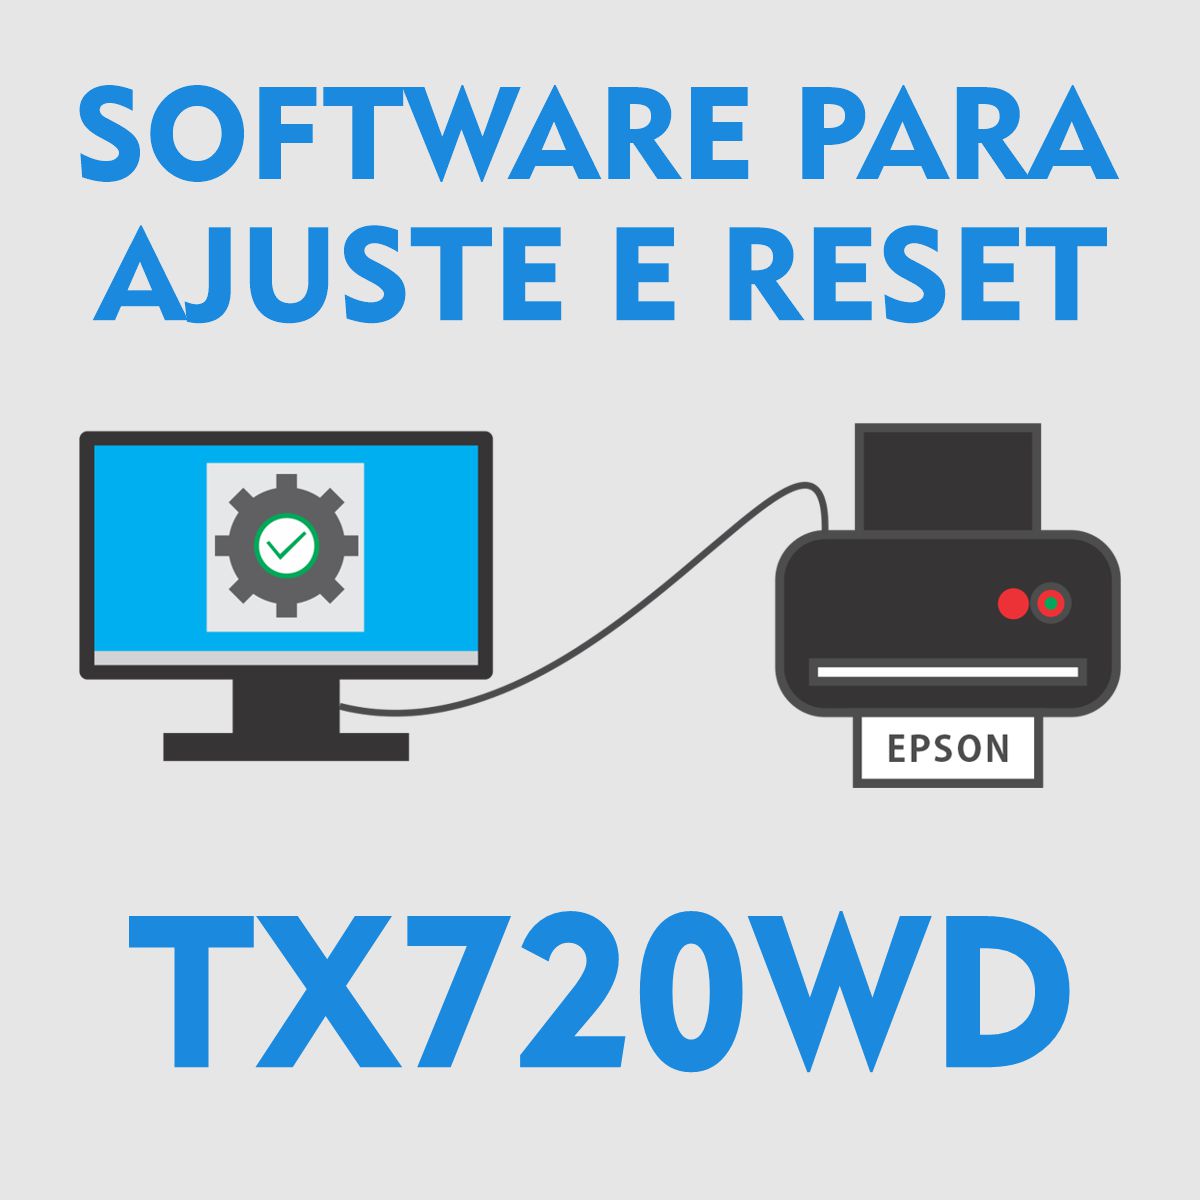 Epson TX720WD | Software para Ajustes e Reset das Almofadas